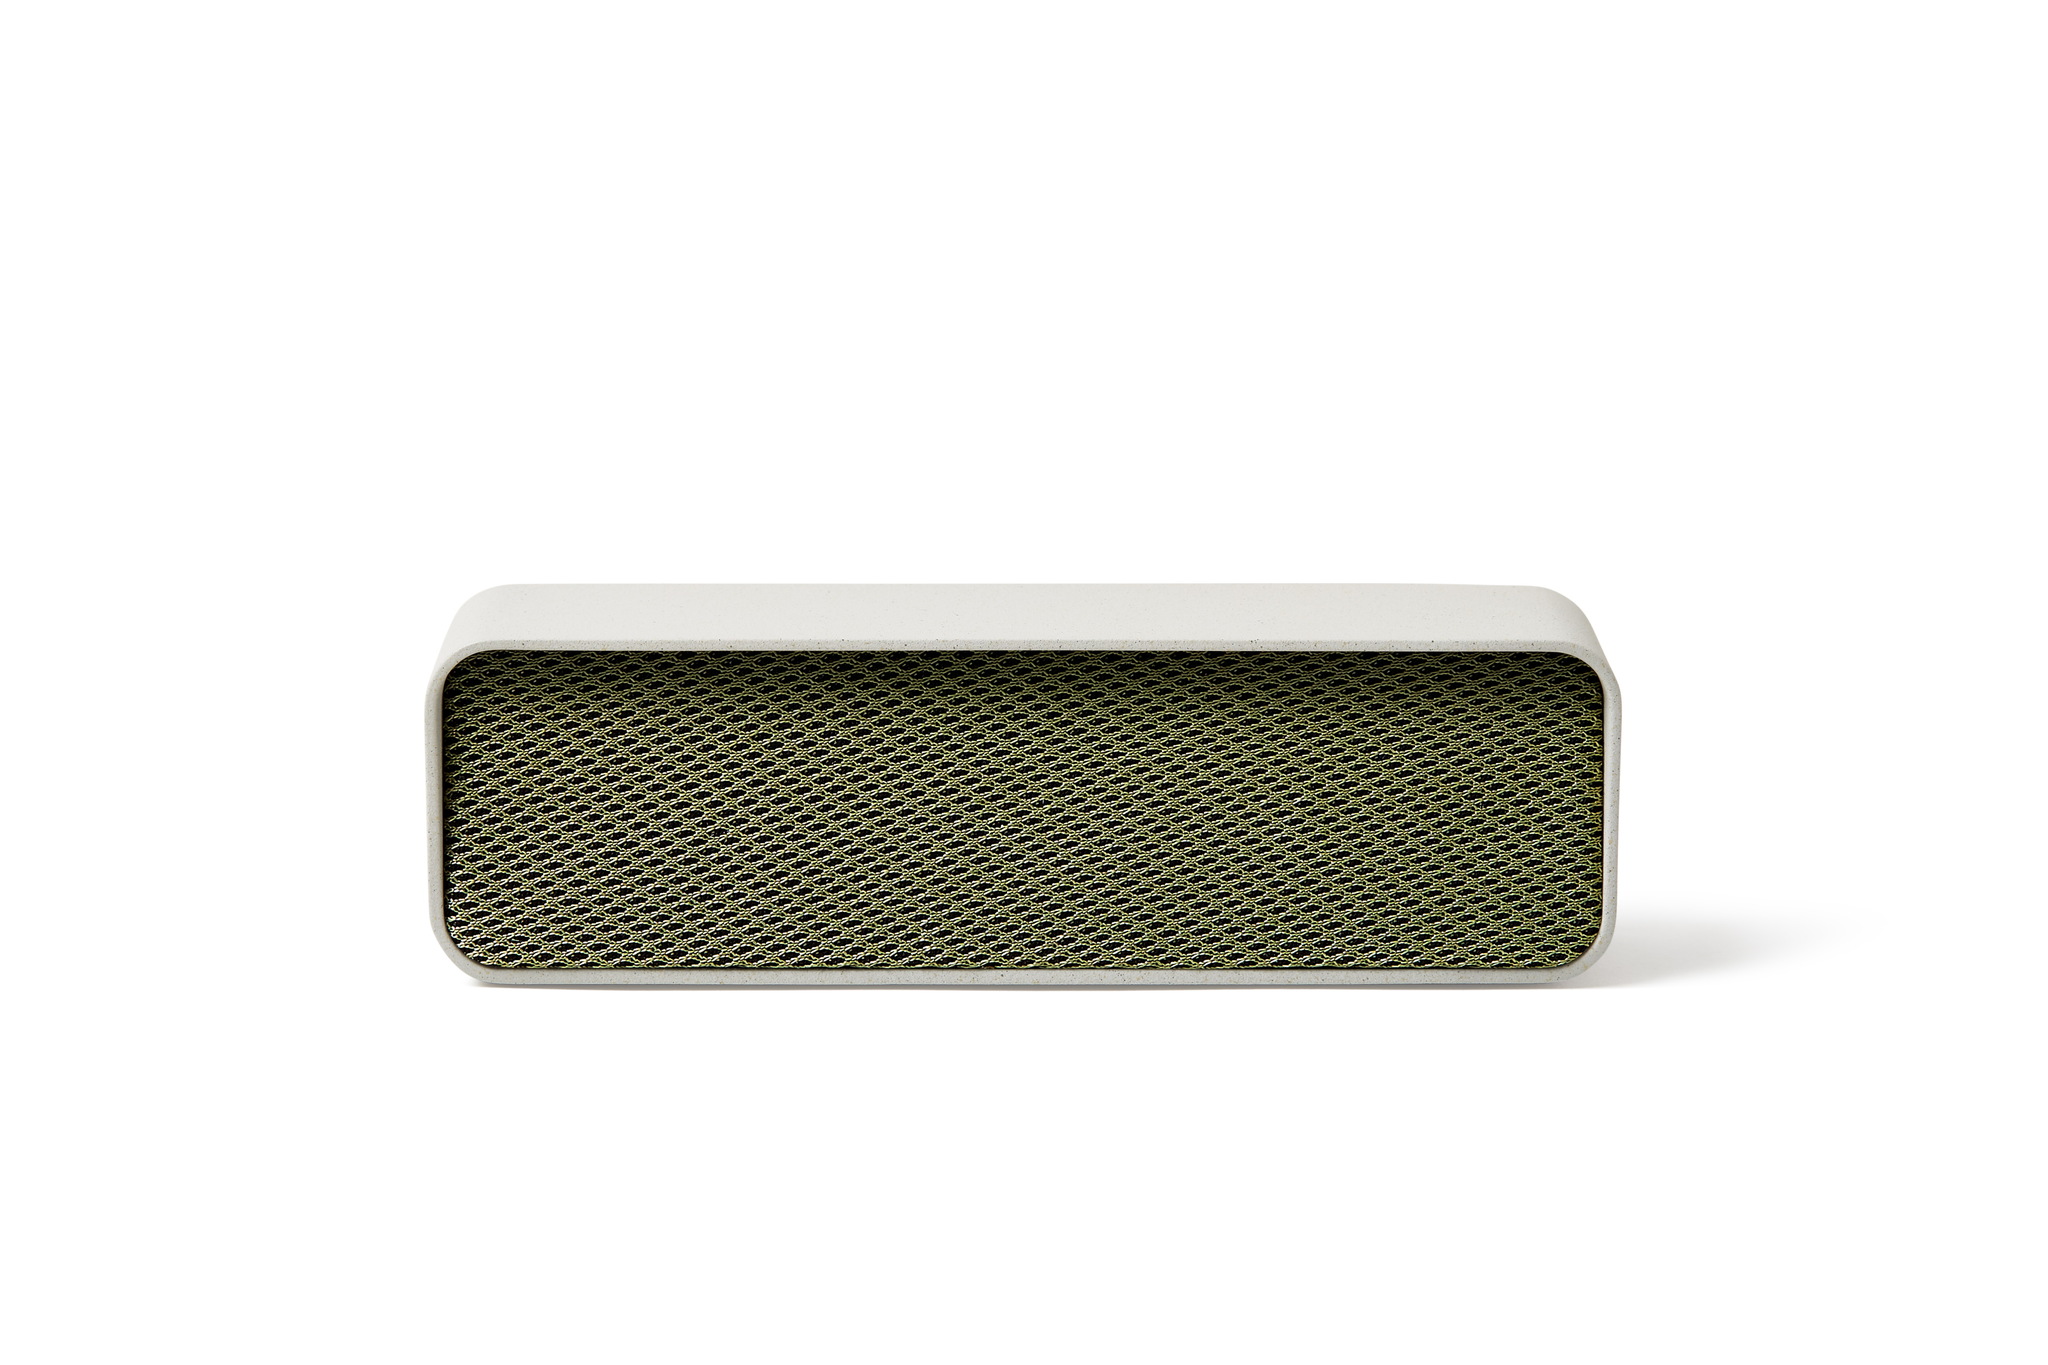 Bluetooth speaker 5W, white green / Chemiefaser un